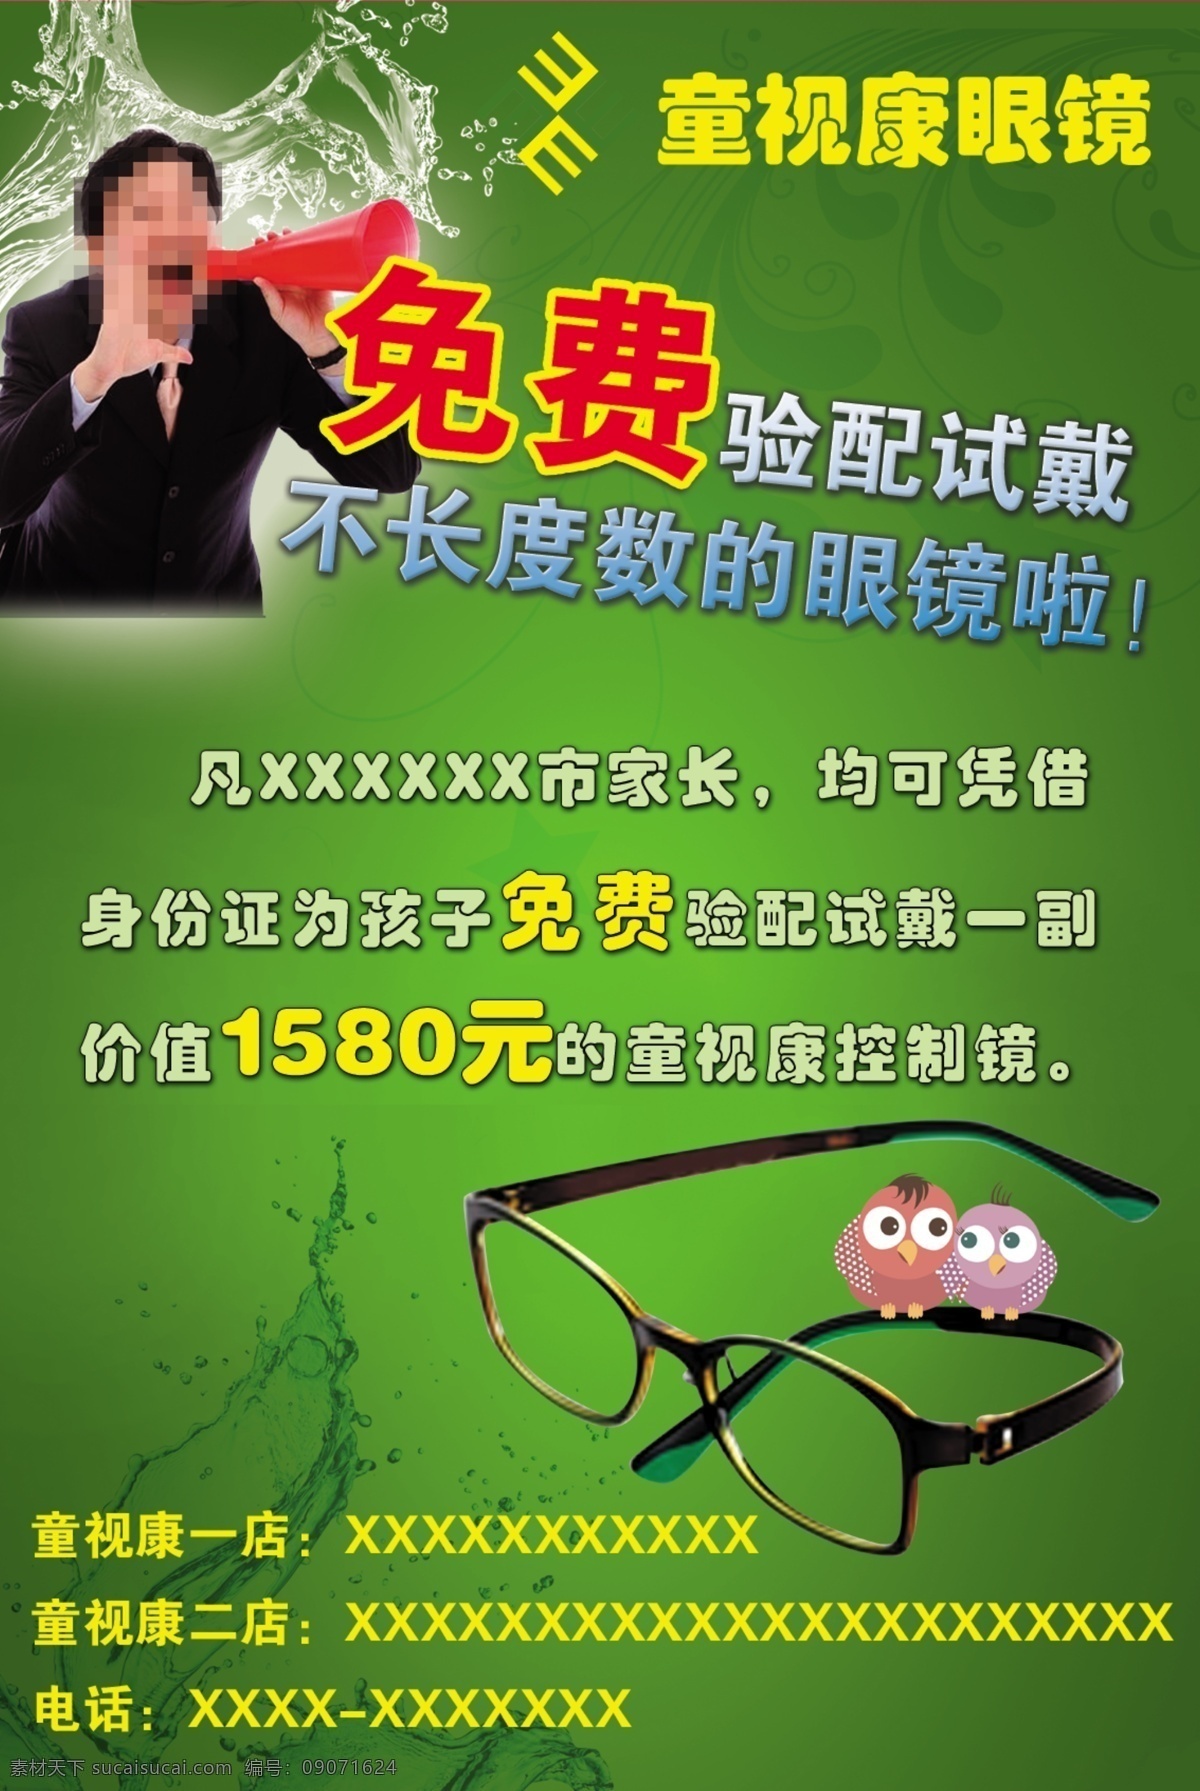 眼镜店 恢复镜 喊话素材 眼睛素材 绿色背景 眼镜 眼镜店海报 眼镜店传单 眼镜店宣传 喵 酱 美容美发 专题 分层